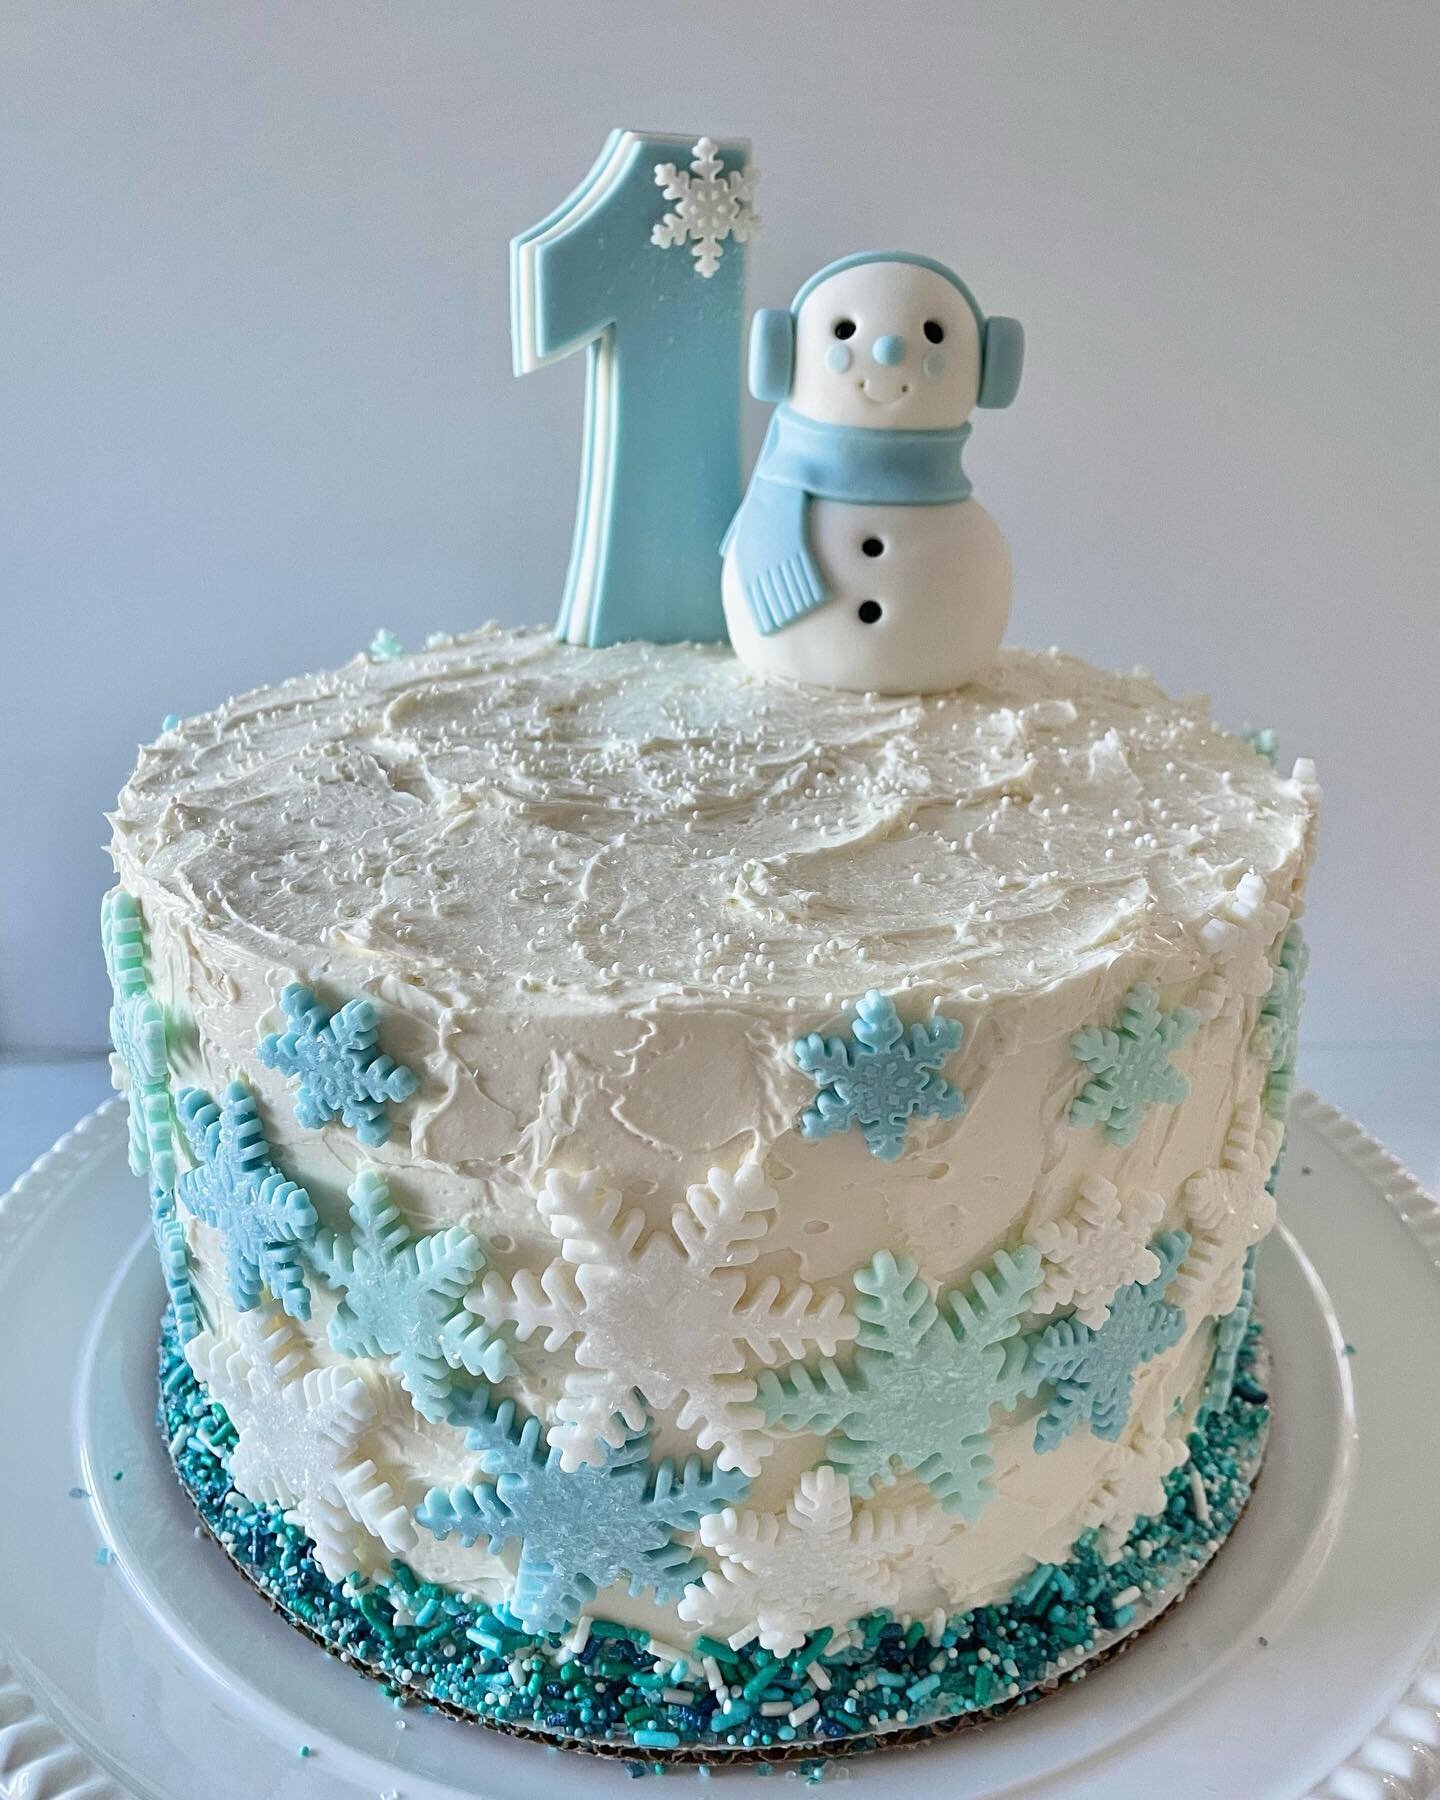 Happy Winter Onederland Birthday❄️ 
Winter birthdays ❄️🎉

#birthday 
#winter 
#birthdaycake 
#snow
#letitsnow